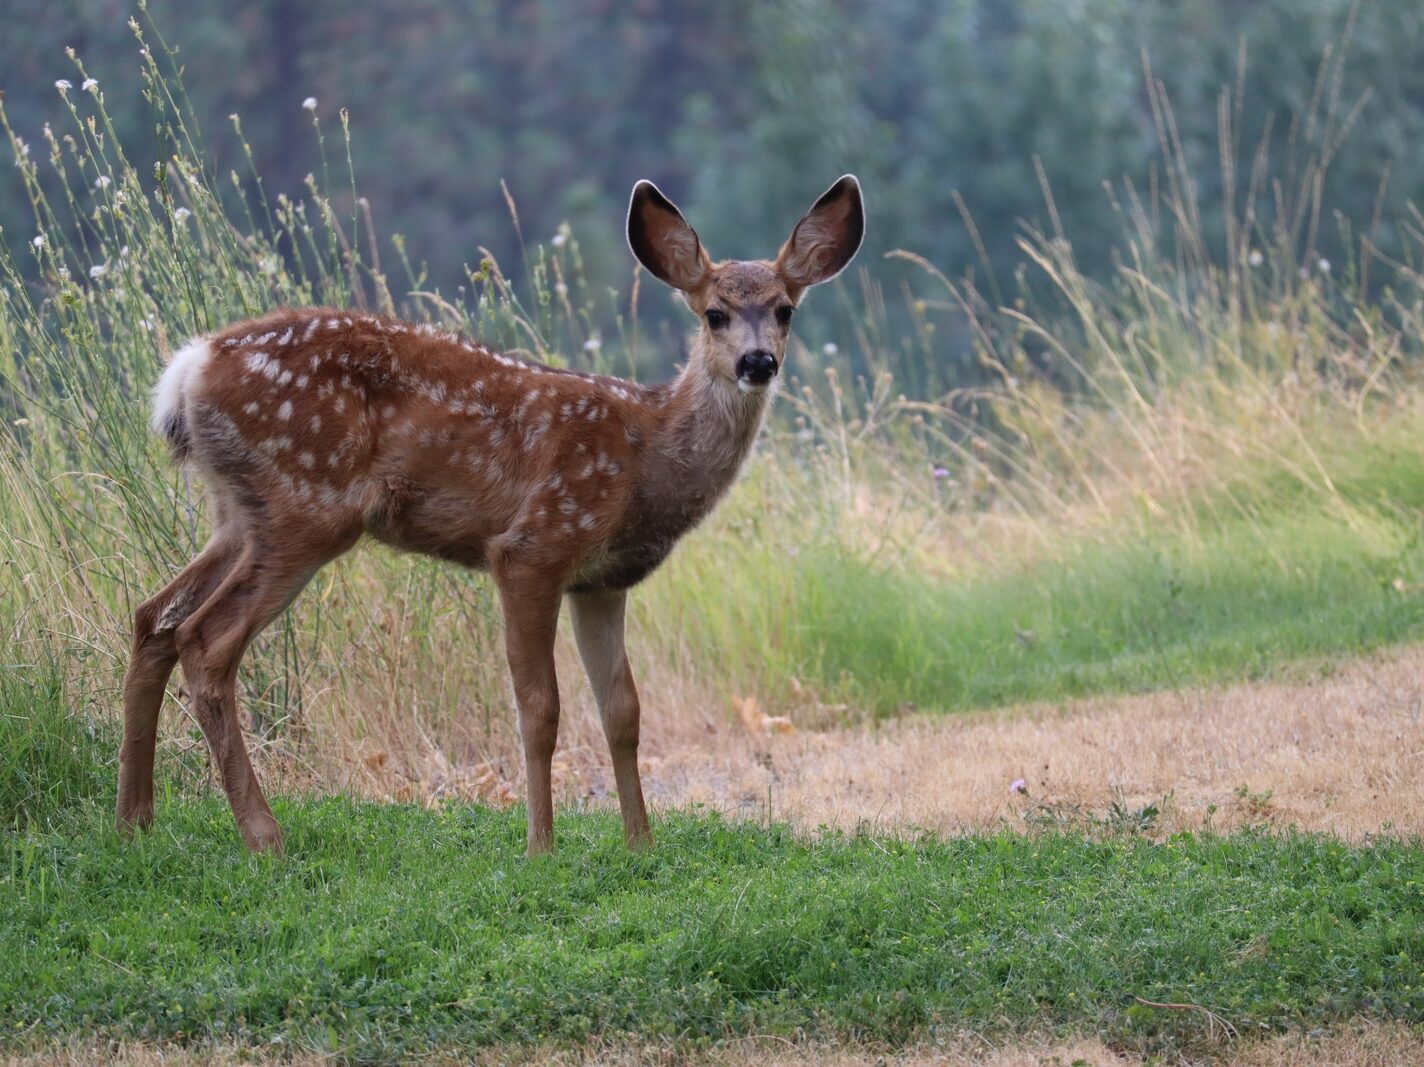 brown deer standing on green grass field